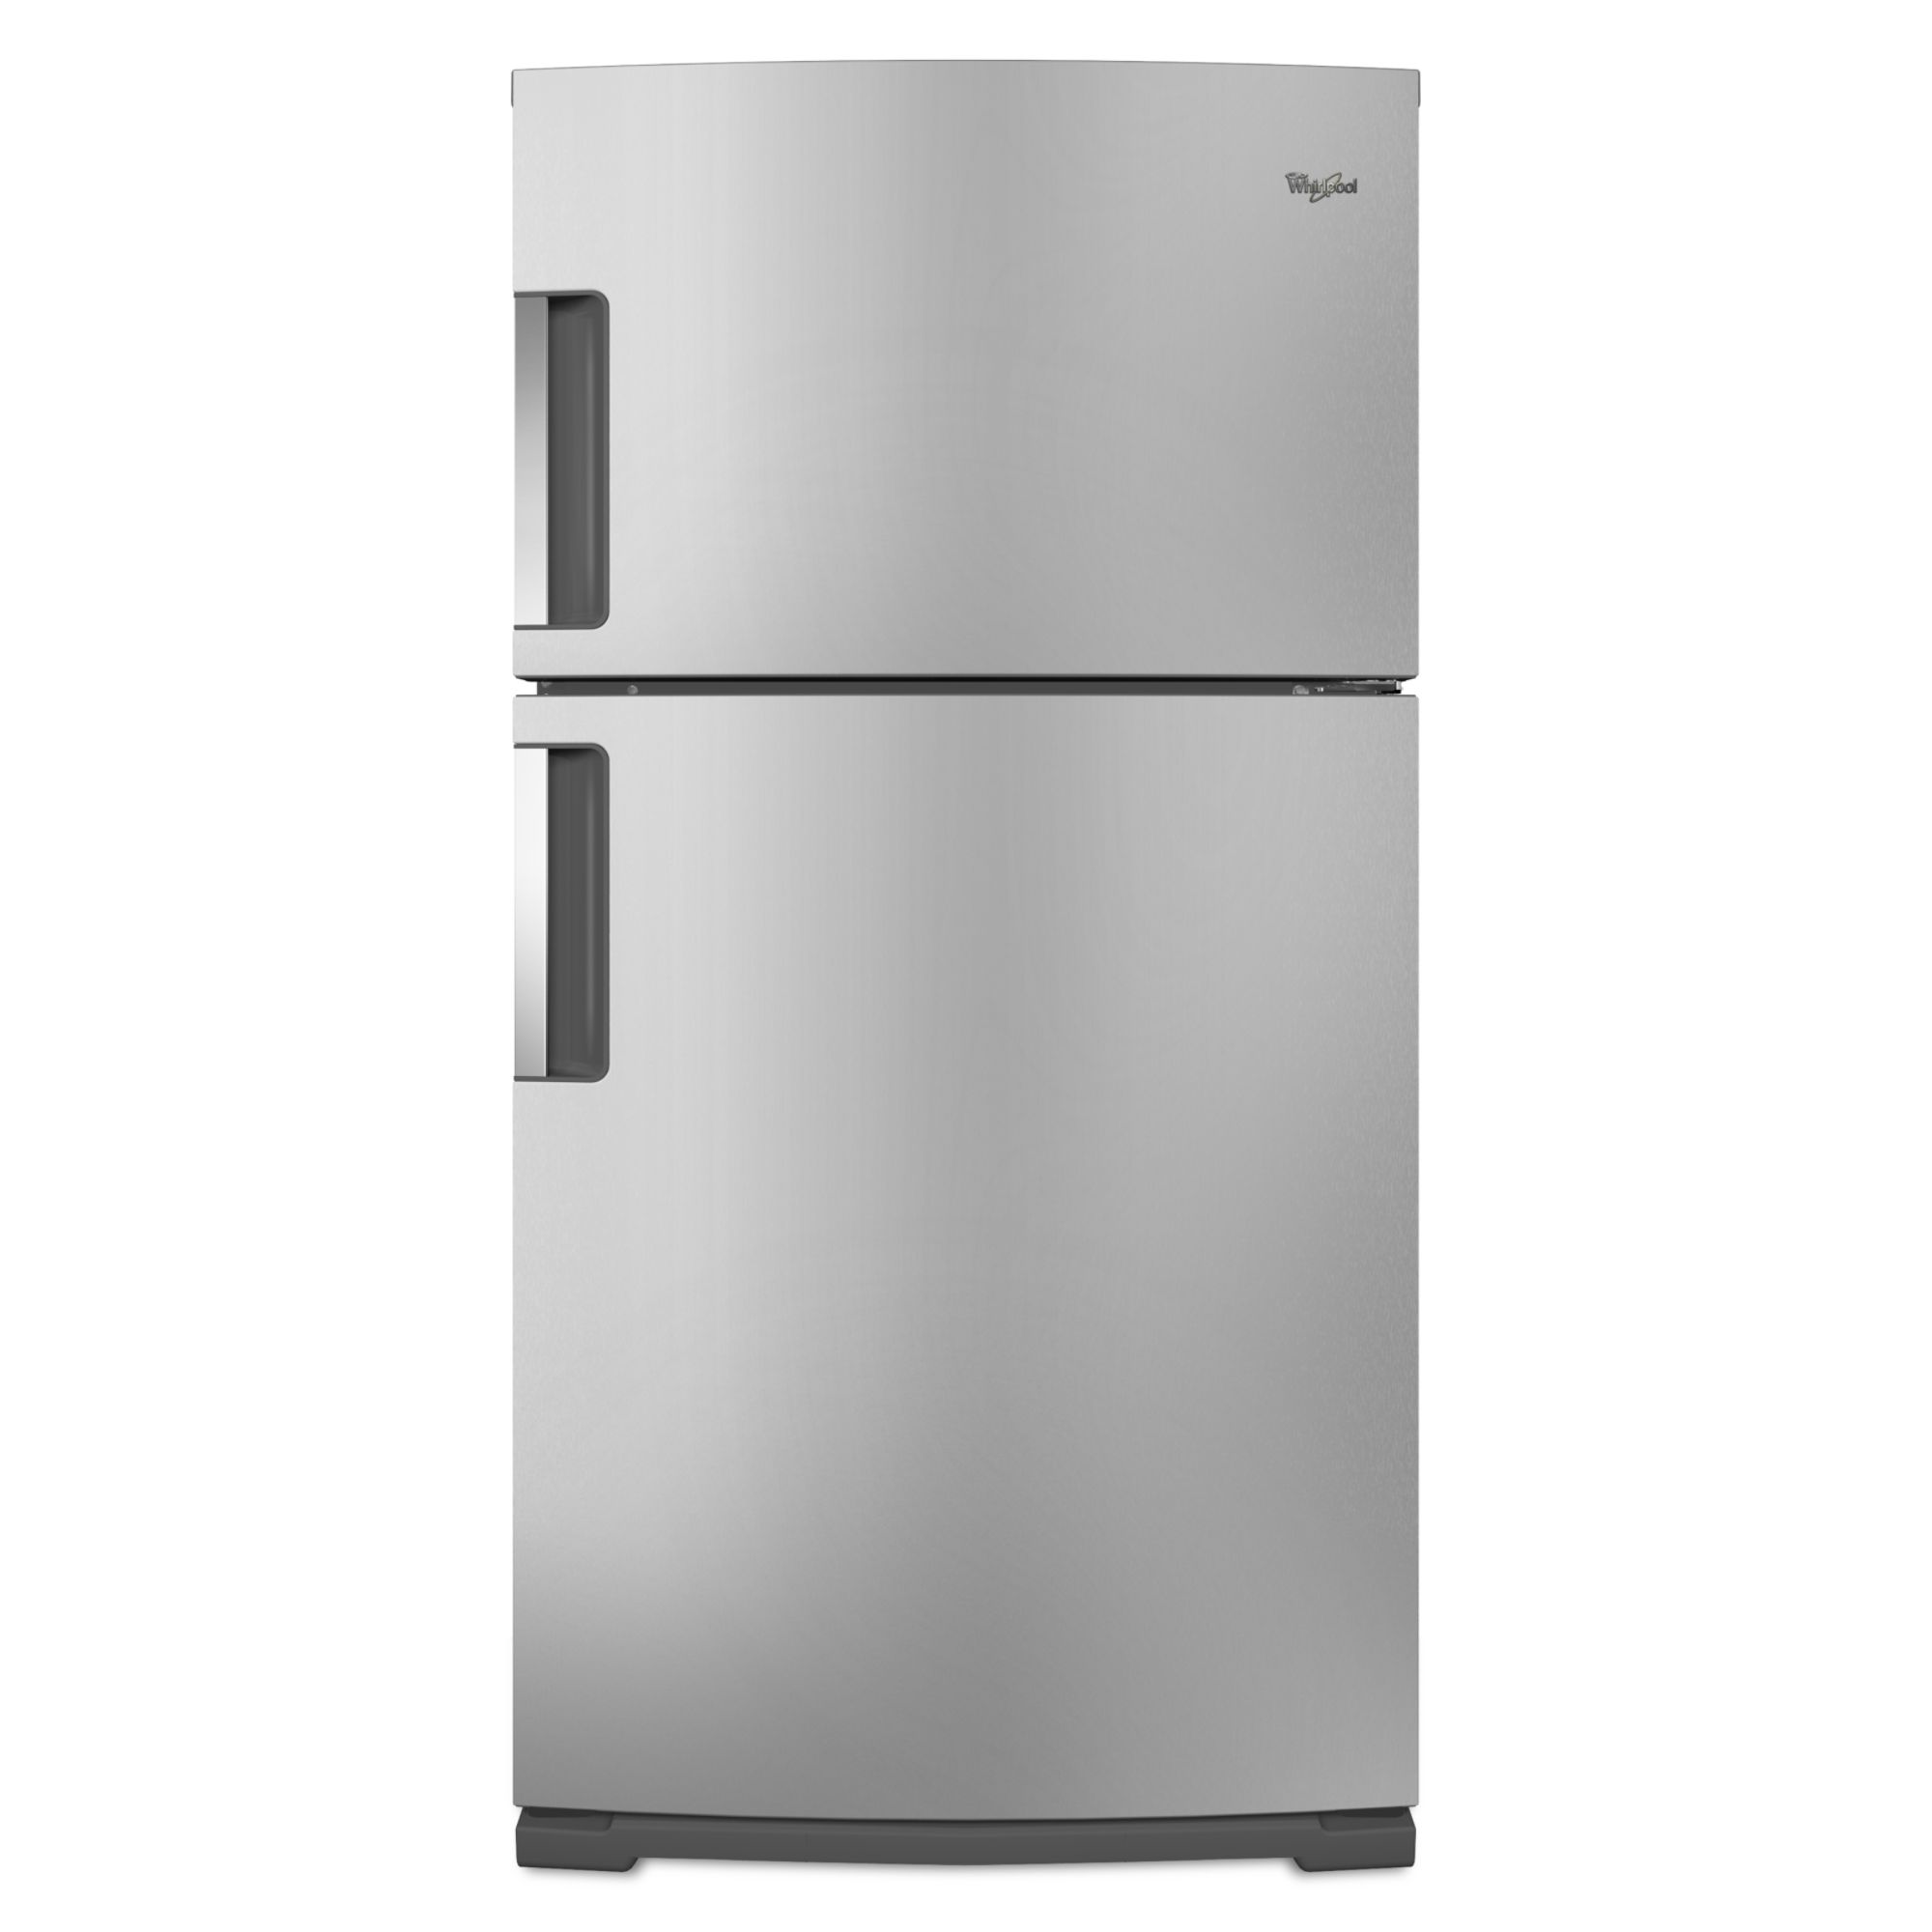 Whirlpool Top Freezer Refrigerator 21.1 cu. ft. WRT771RWYM 